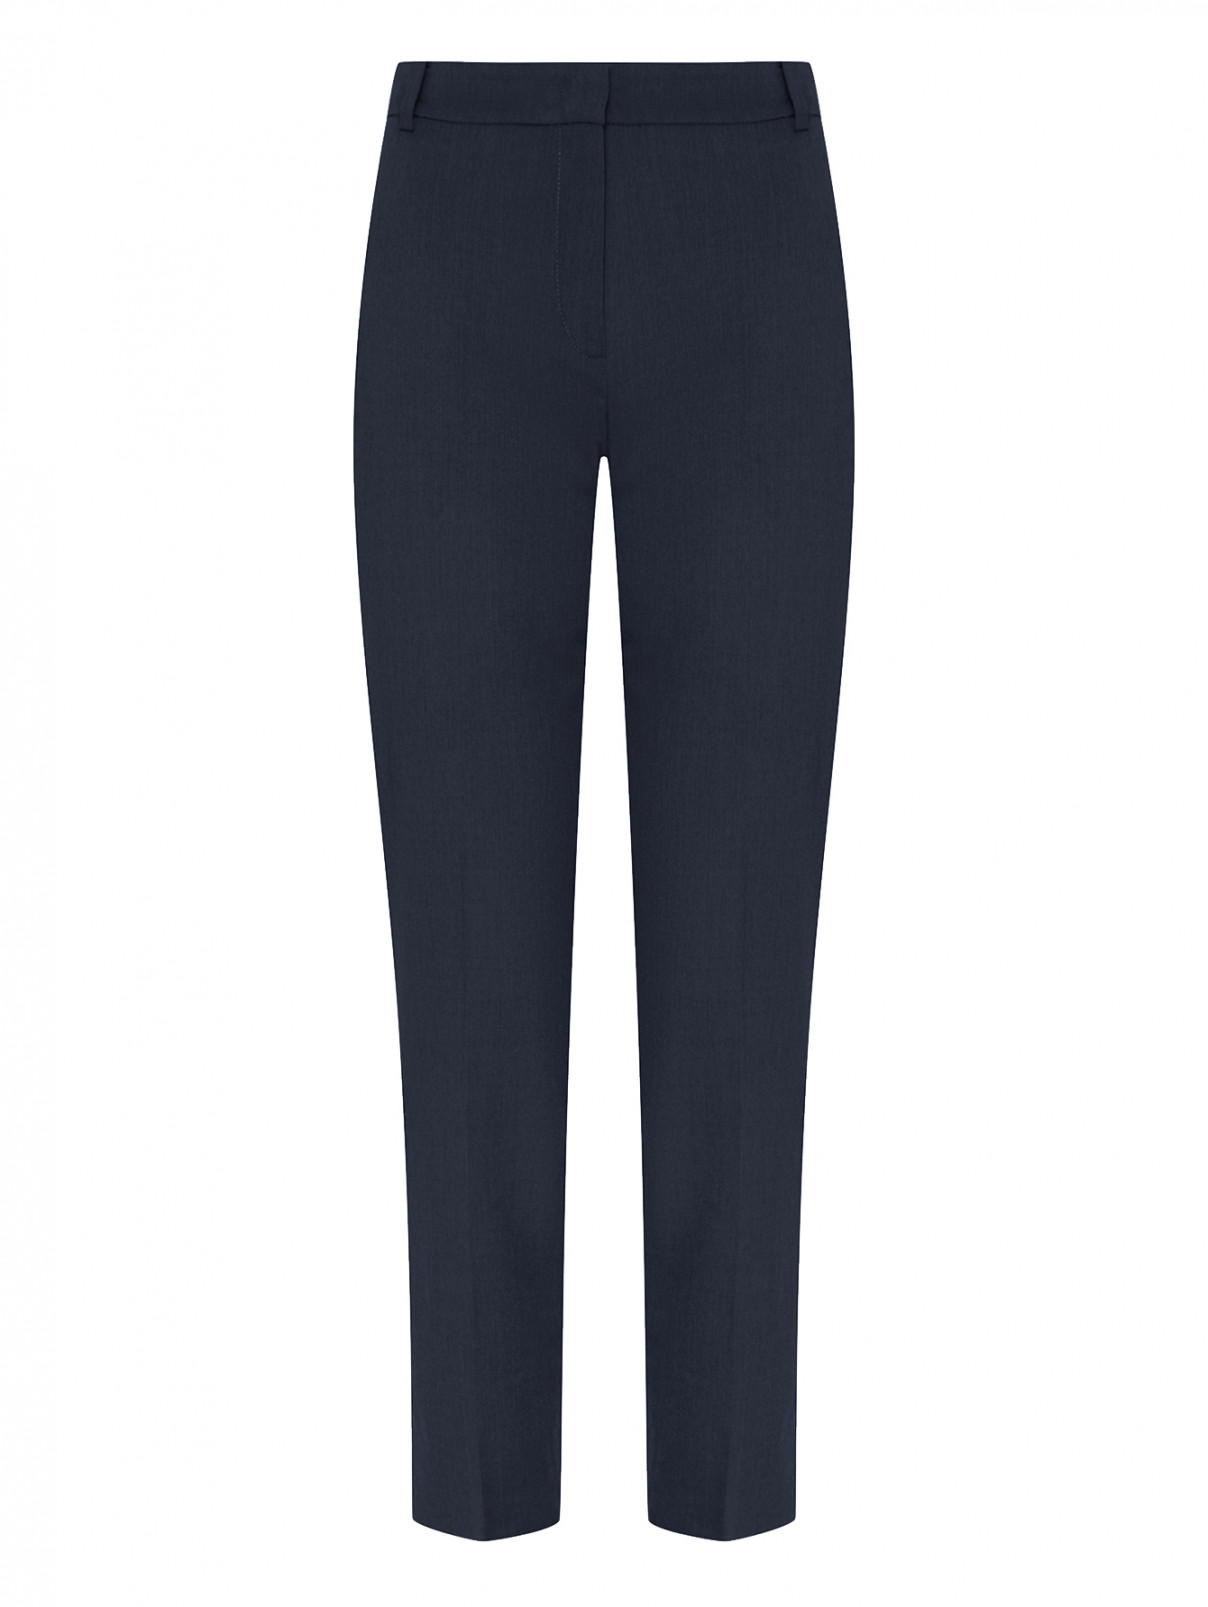 Прямые брюки с карманами Luisa Spagnoli  –  Общий вид  – Цвет:  Черный